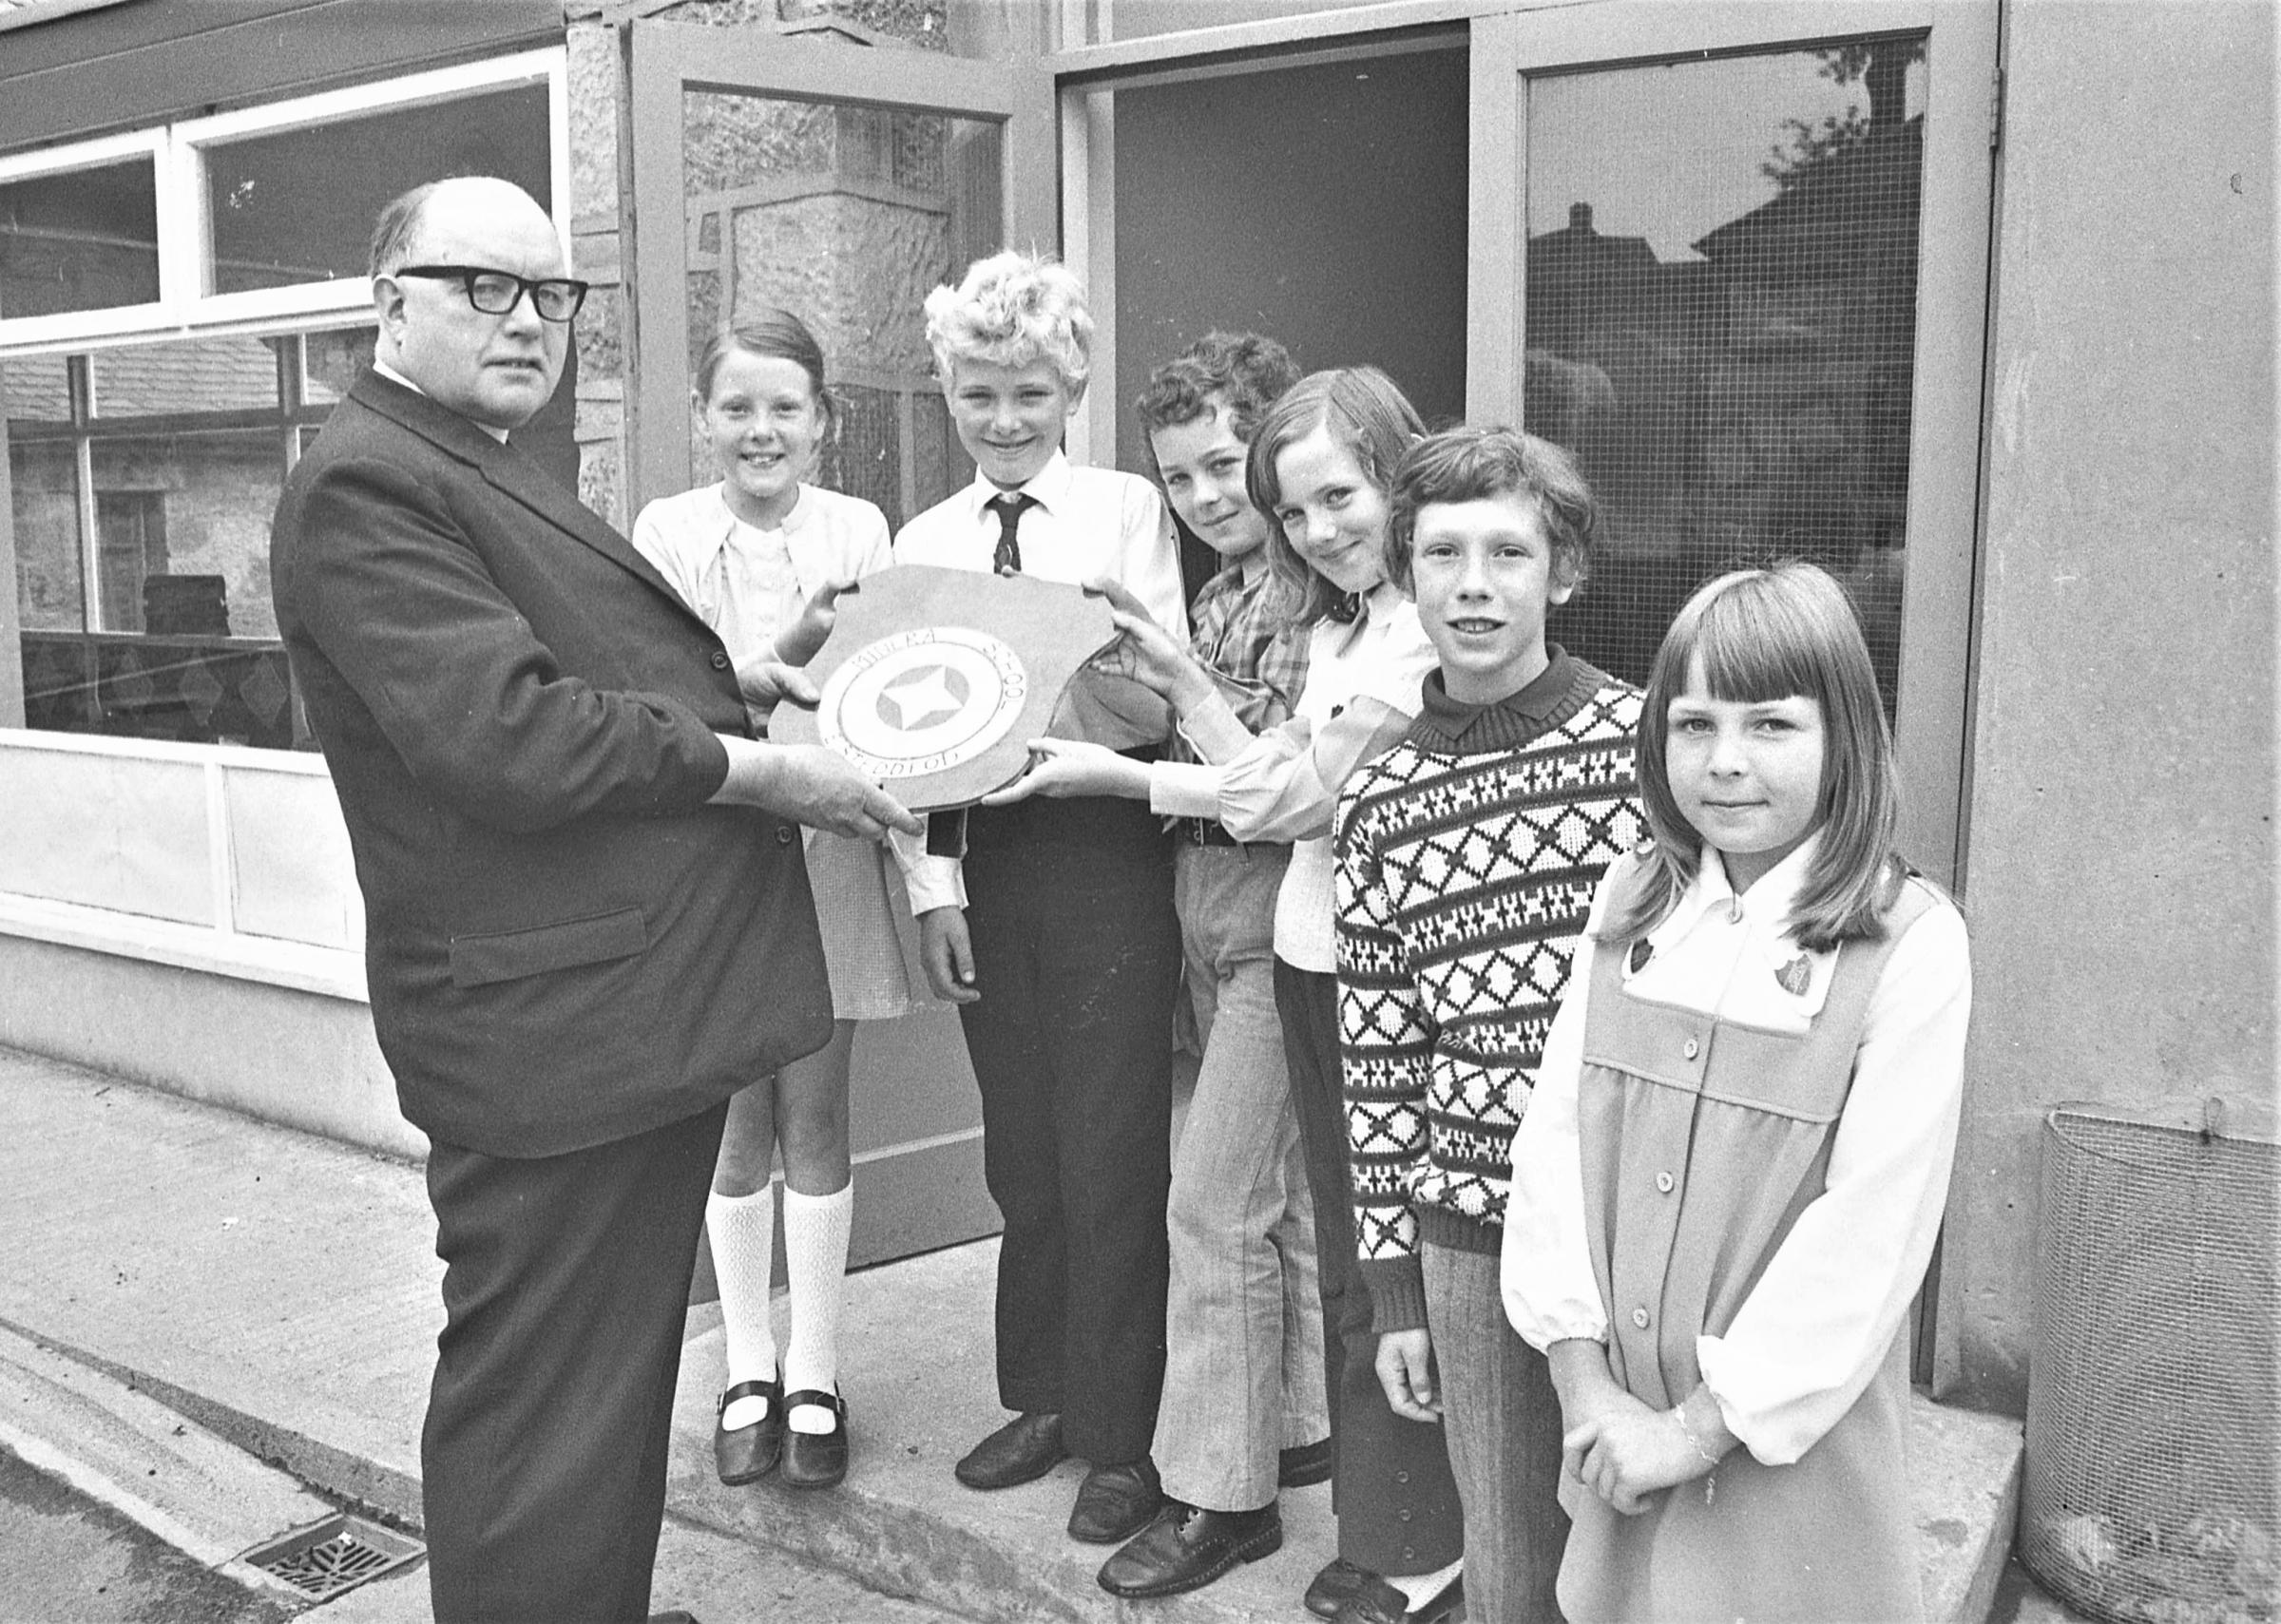 Minera School eisteddfod winners, June 1973.